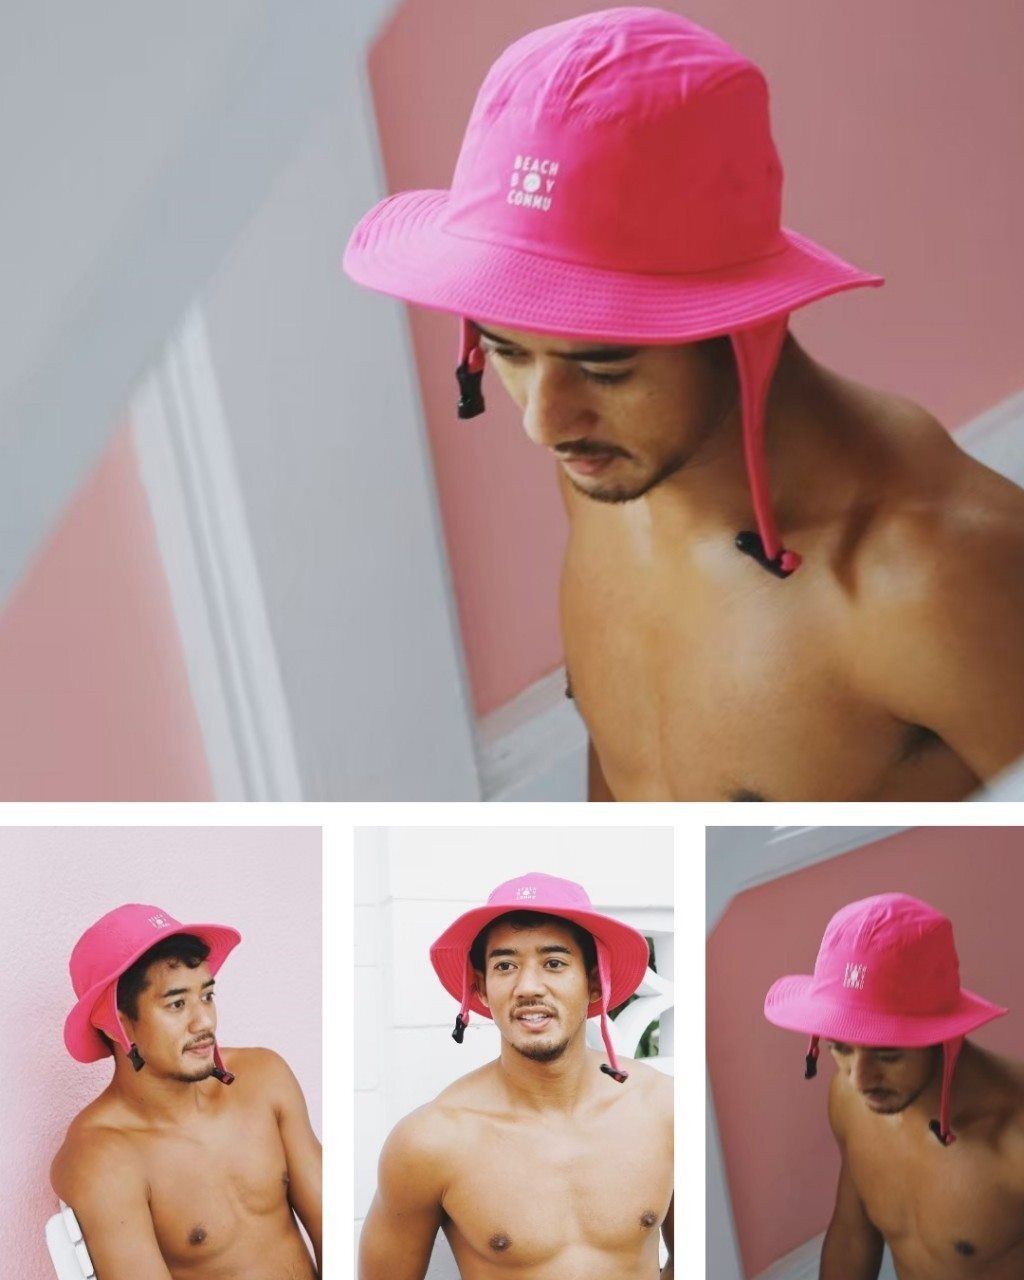 芭比粉紅色衝浪帽:潛水帽 Flamingo pink surf hat